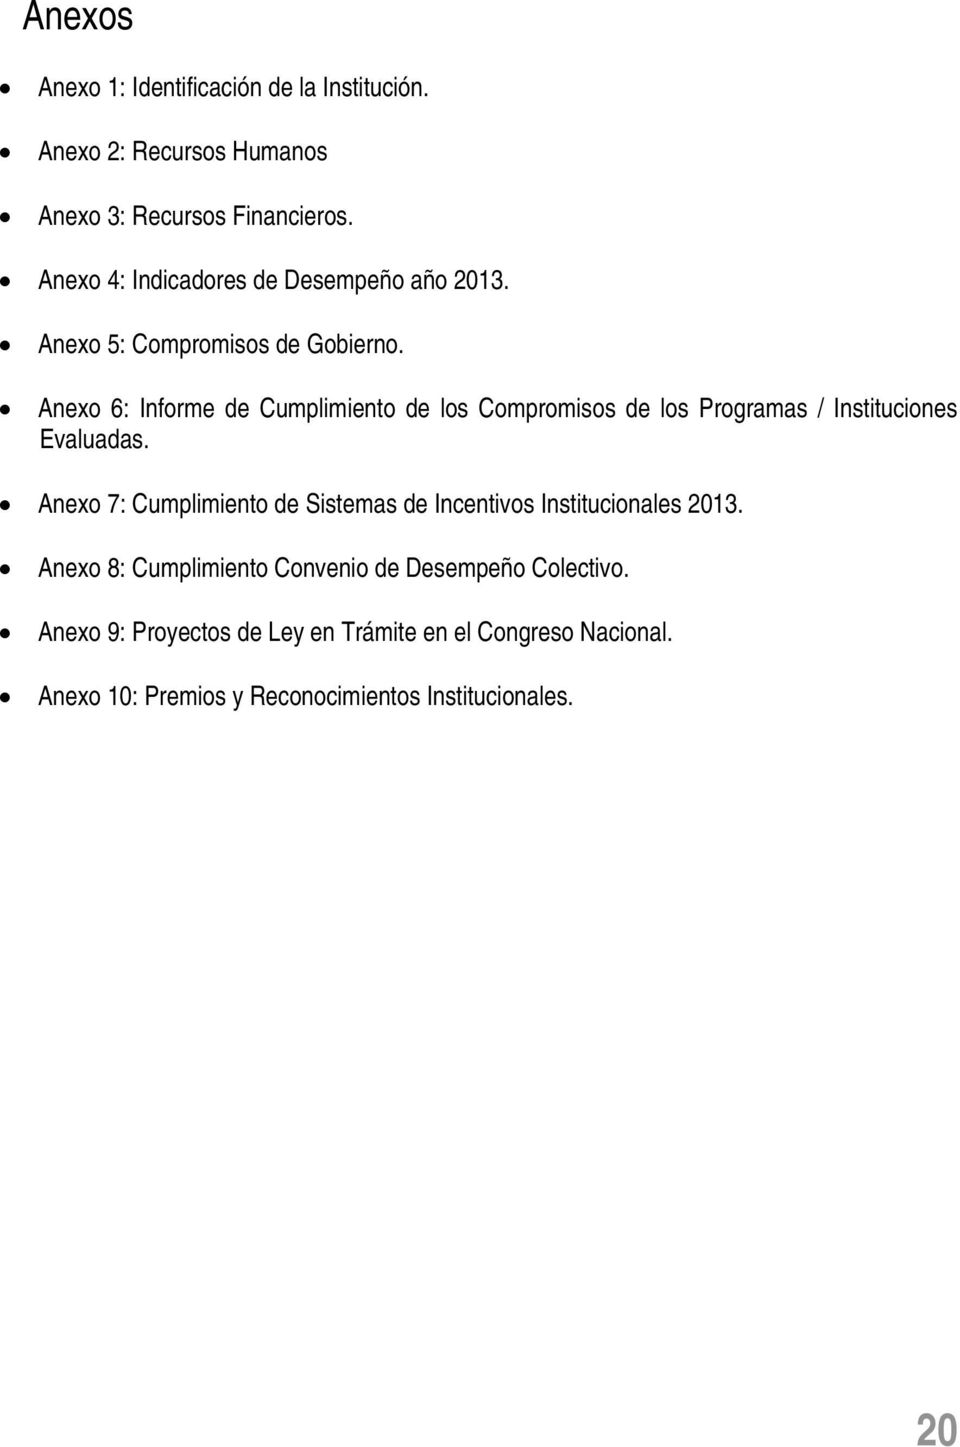 Anexo 6: Informe de Cumplimiento de los Compromisos de los Programas / Instituciones Evaluadas.